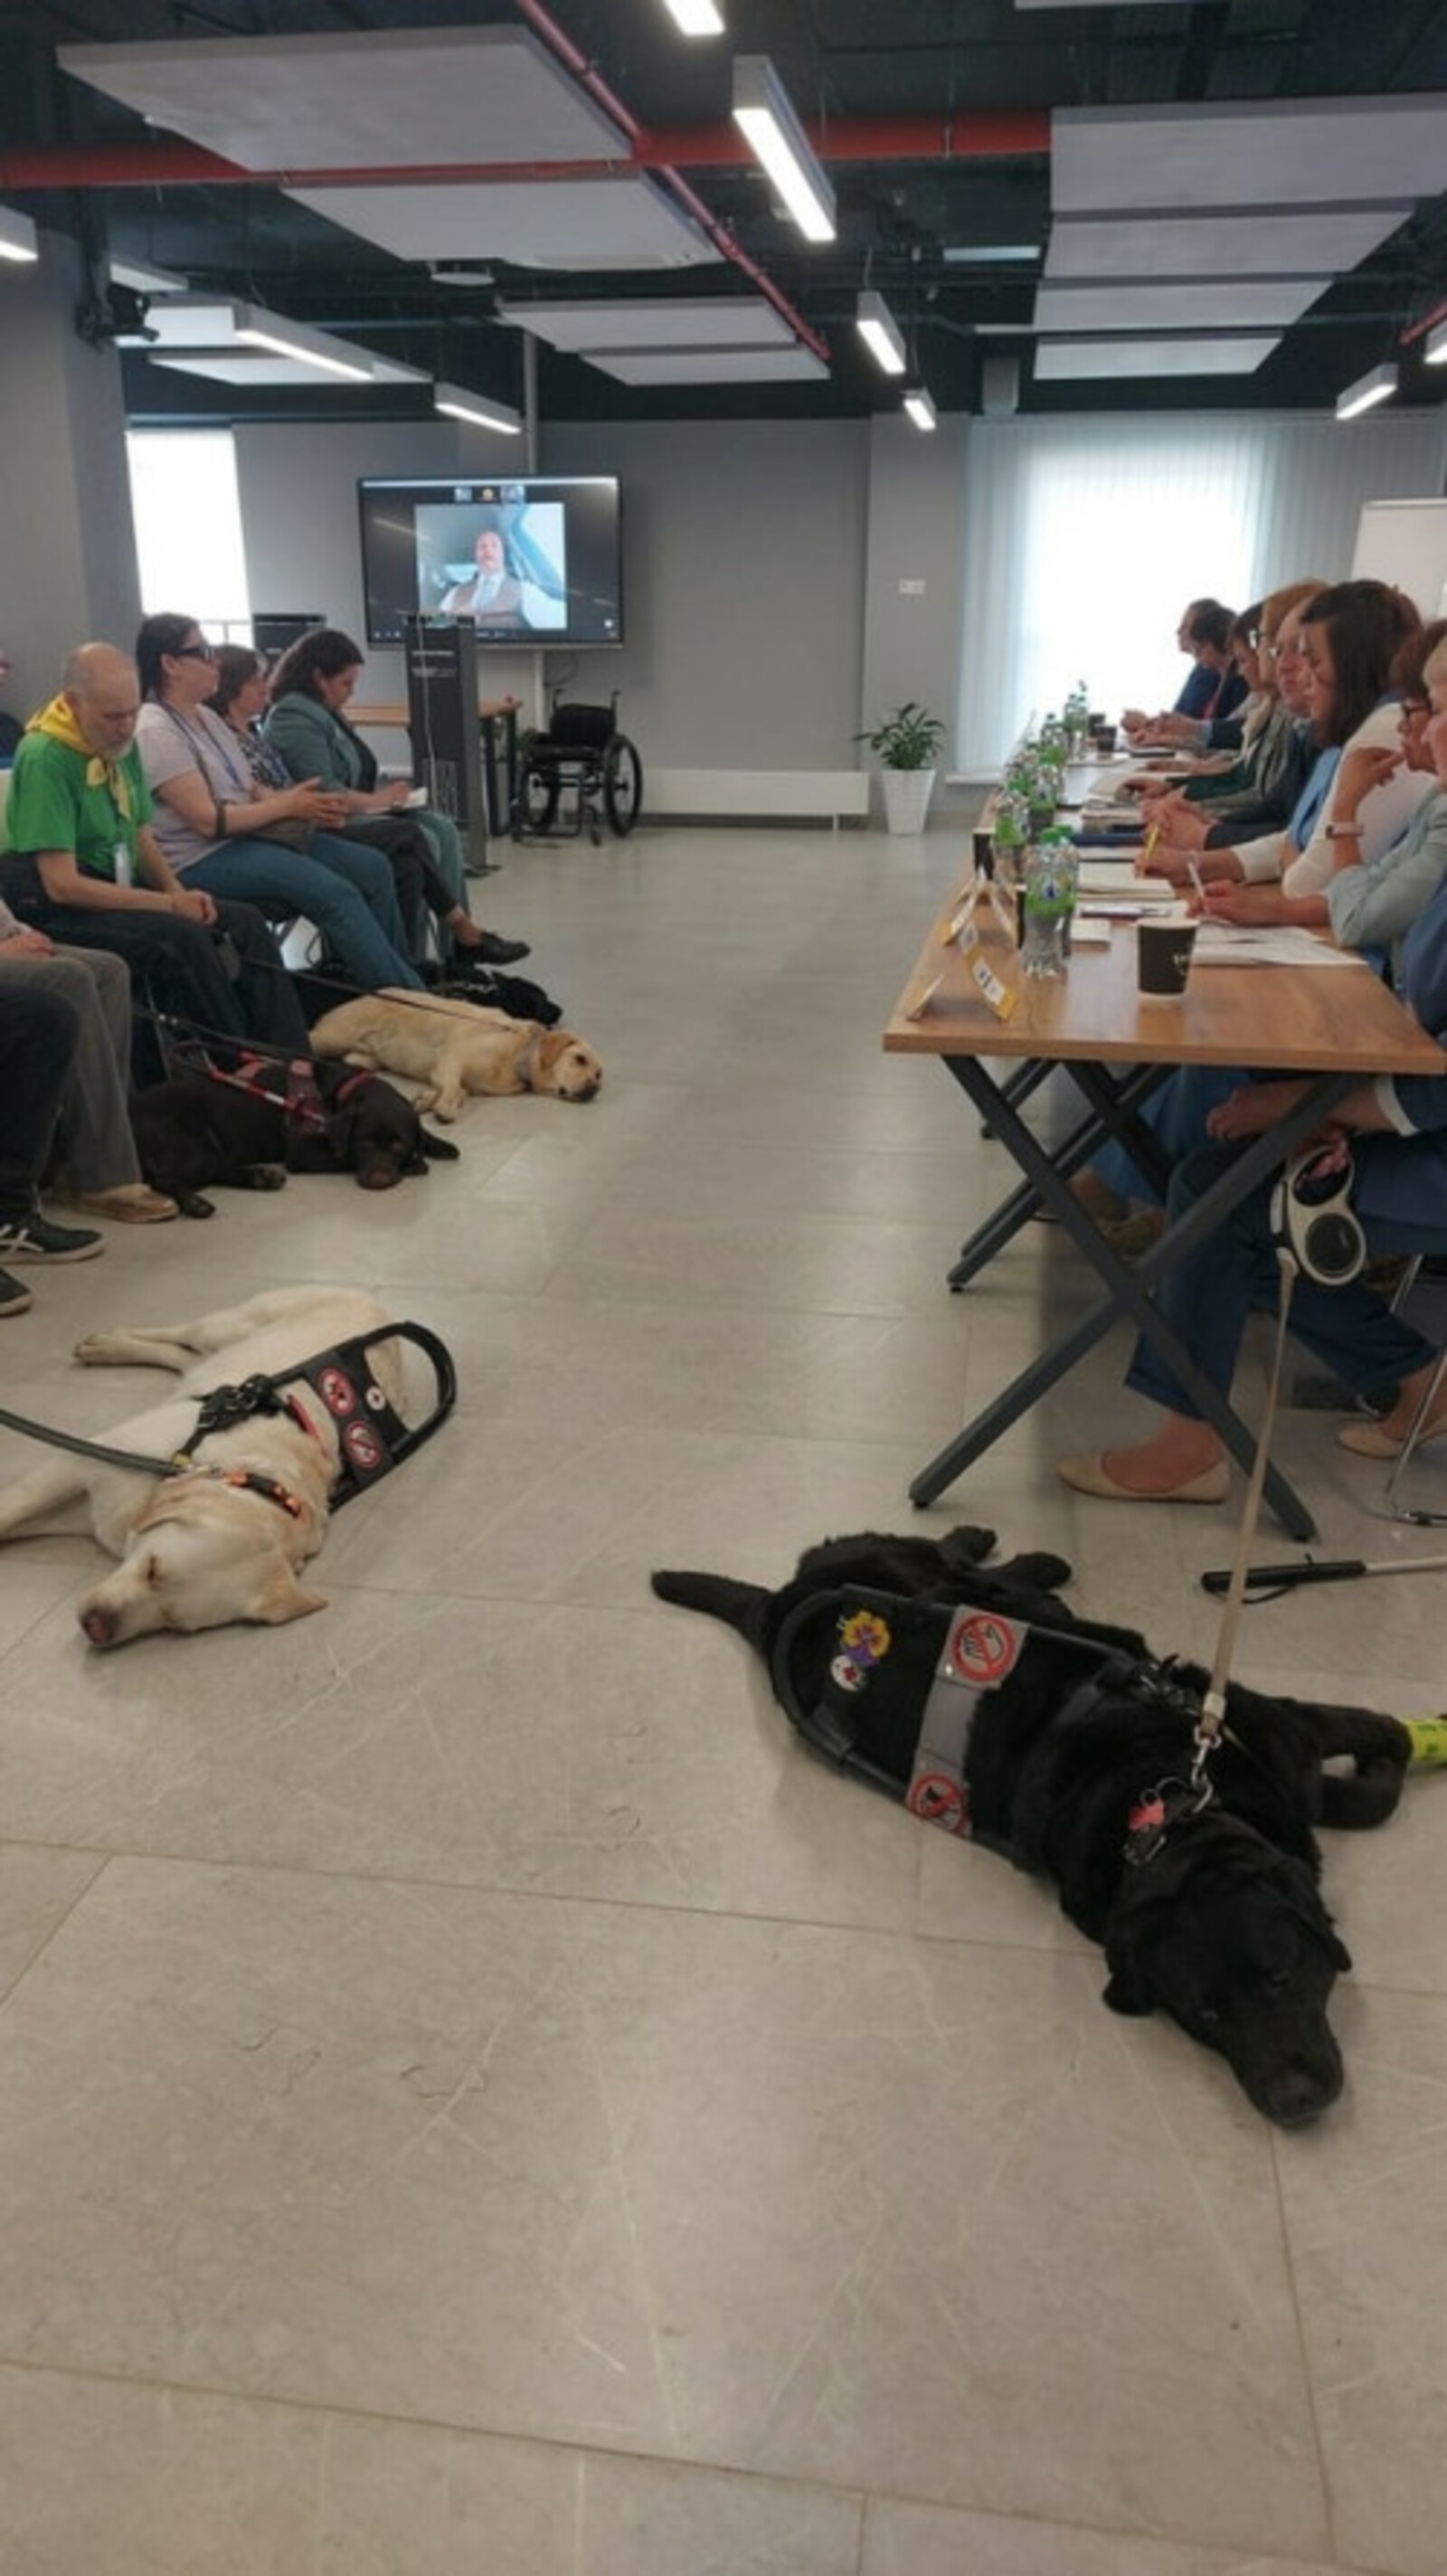 В Межвузовском кампусе Уфы провели встречу владельцев собак-поводырей